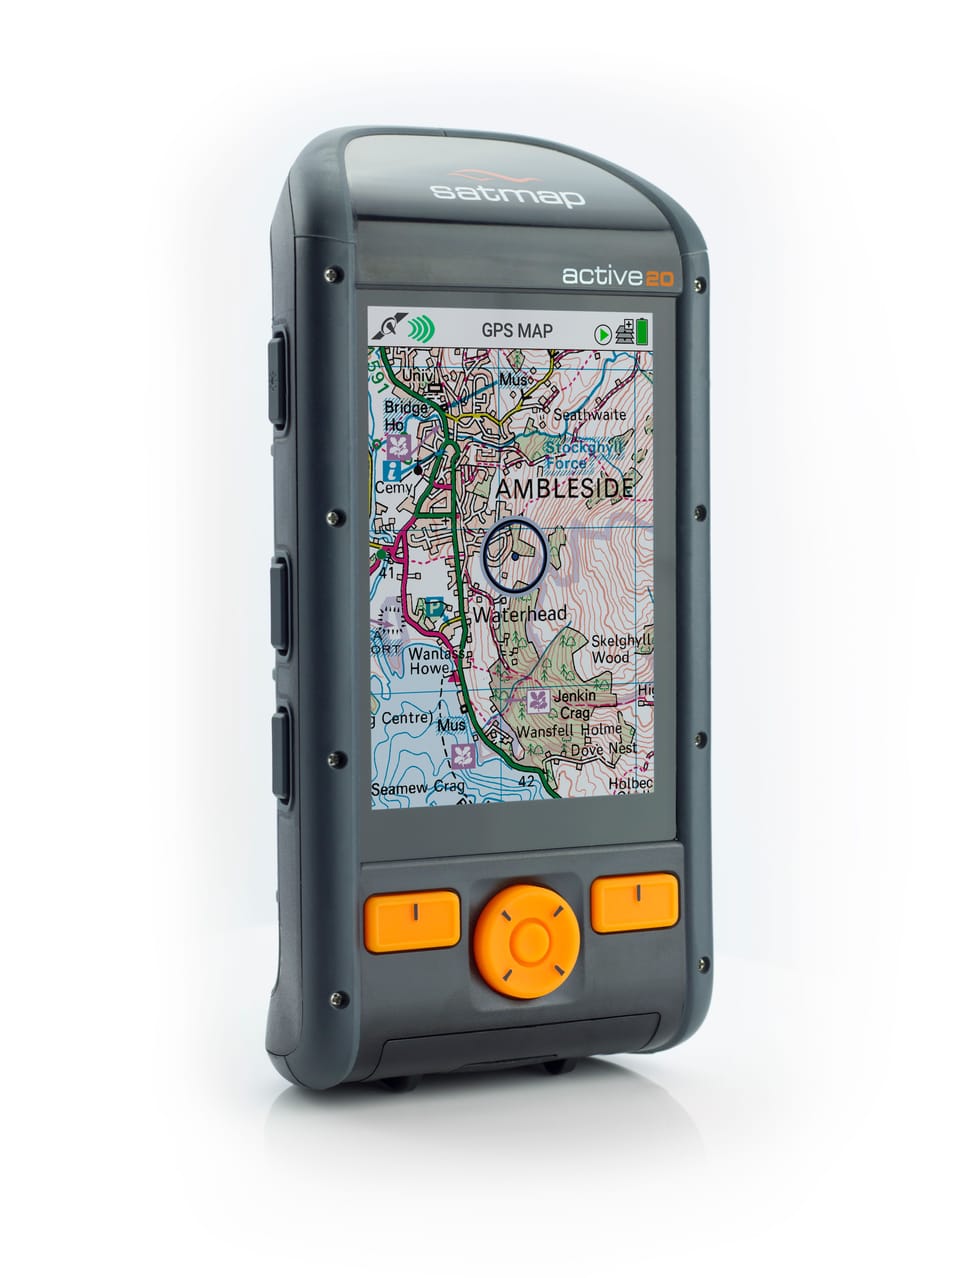 SATMAP ACTIVE 20 SOLO GPS UNIT REVIEW